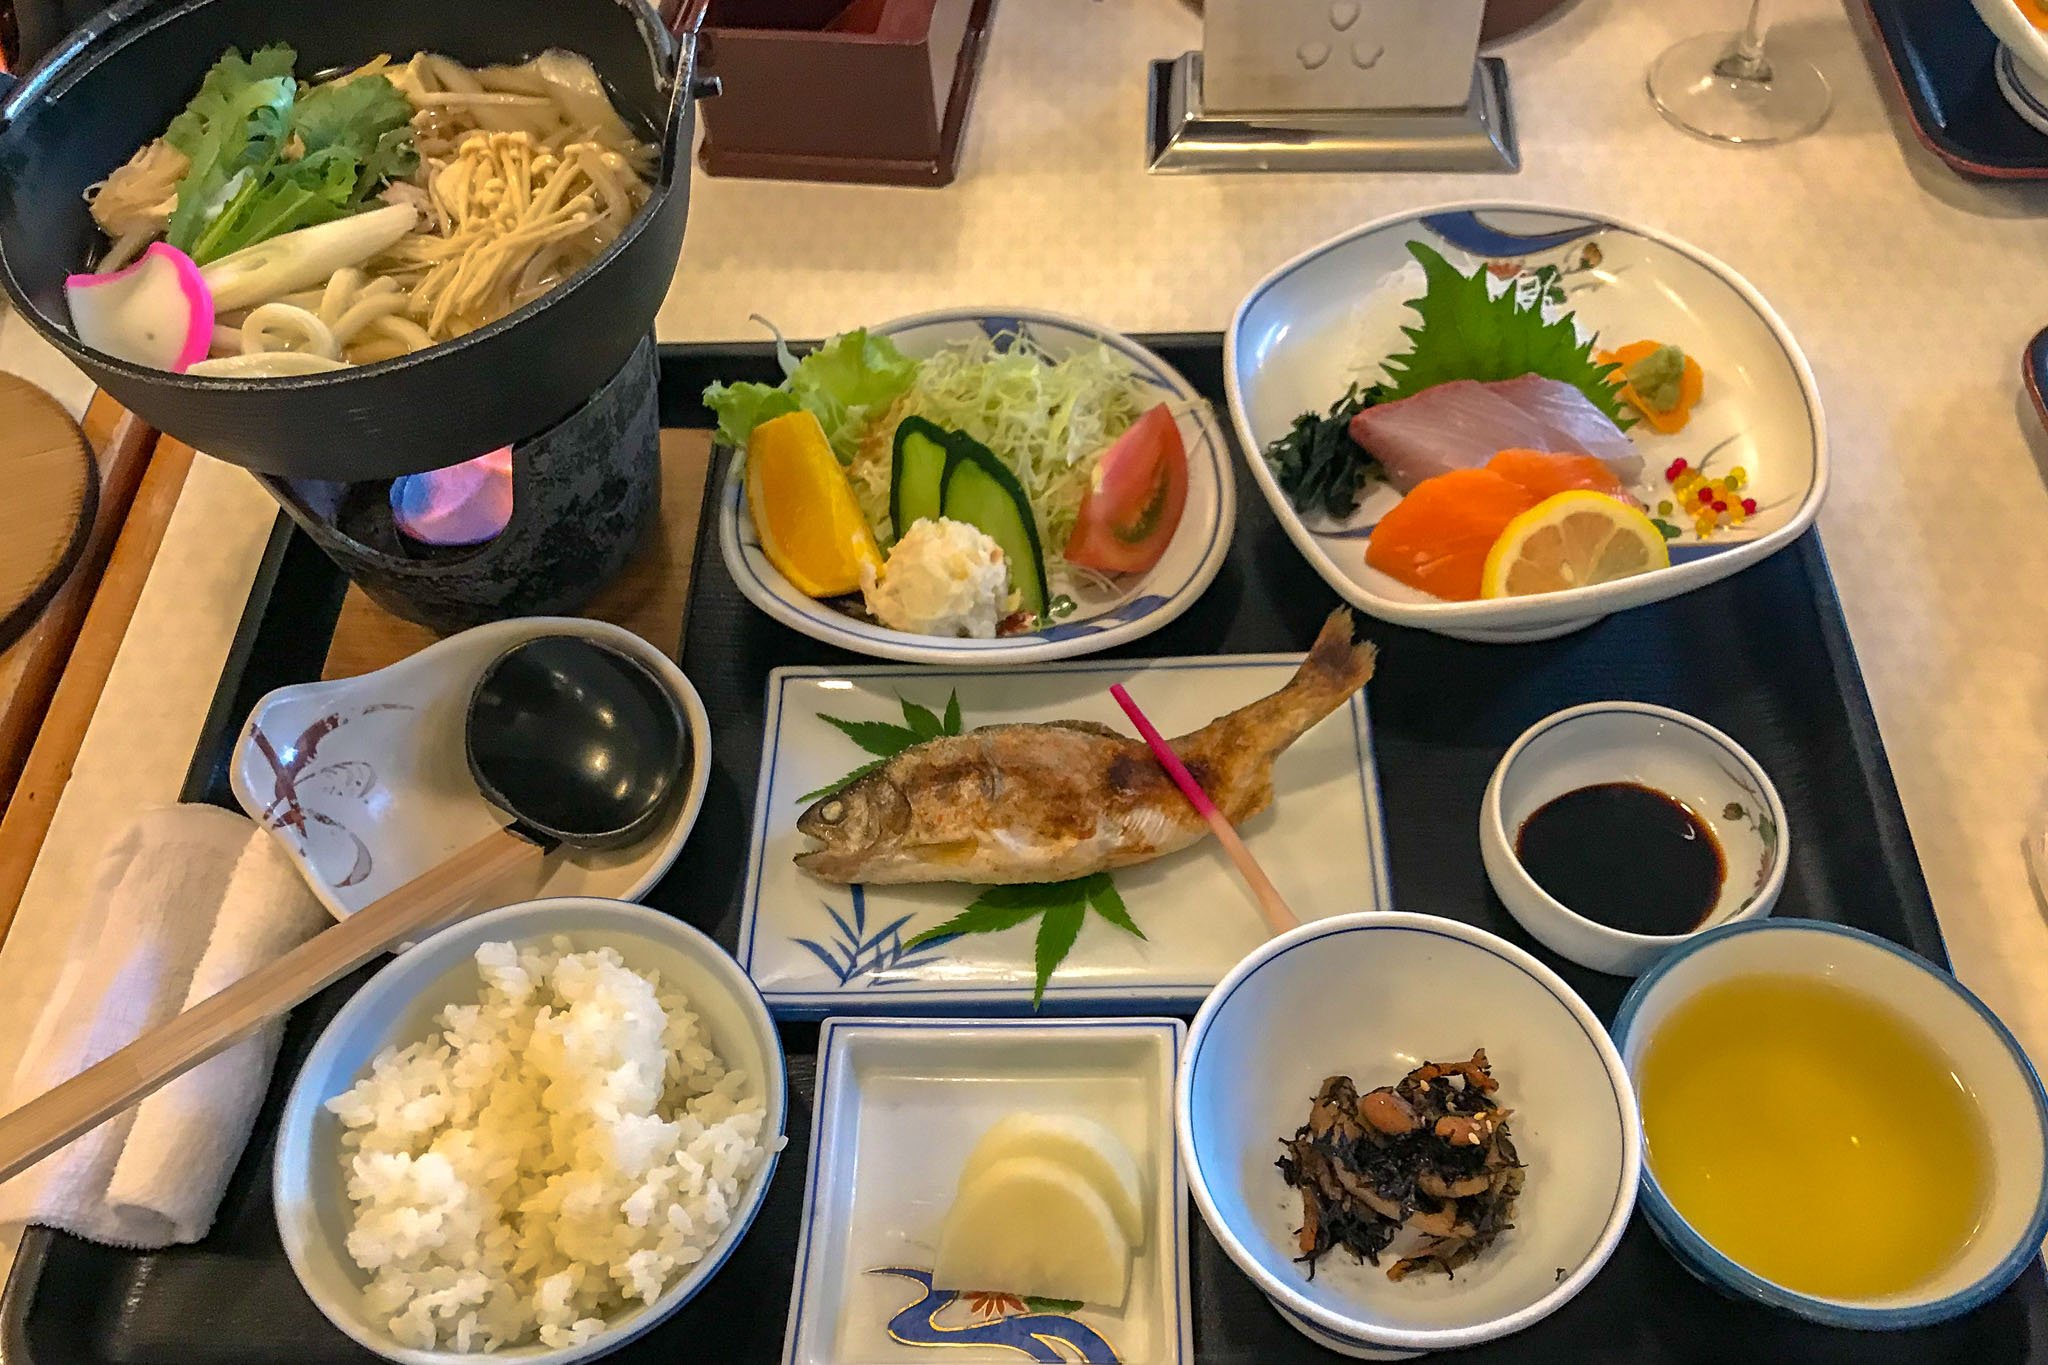 Samurai Japan meal-2254.jpg